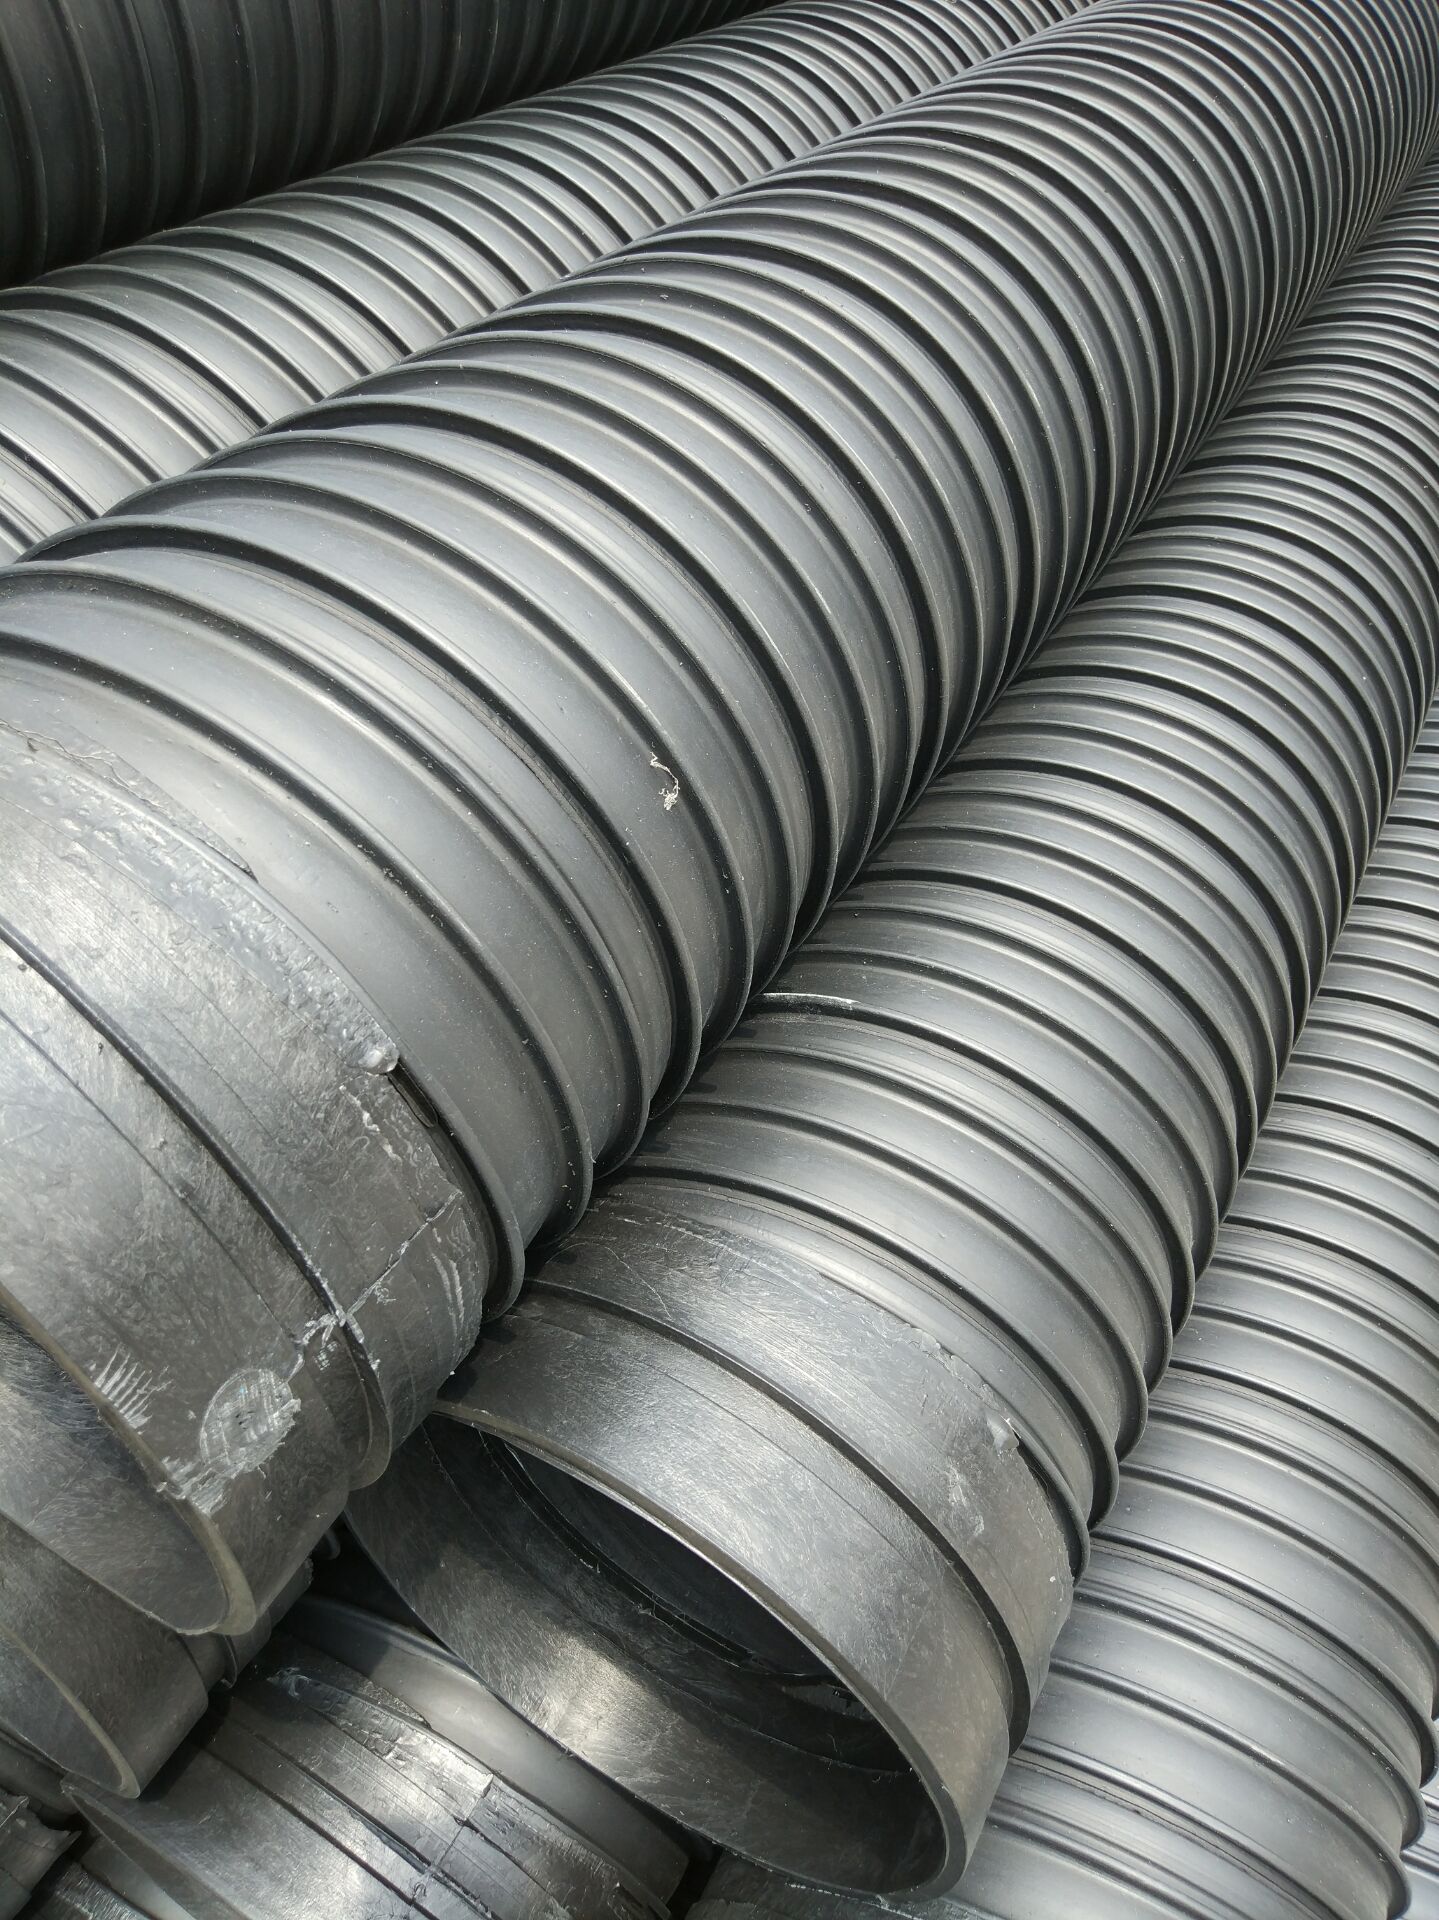 HDPE（聚乙烯）塑钢缠绕管